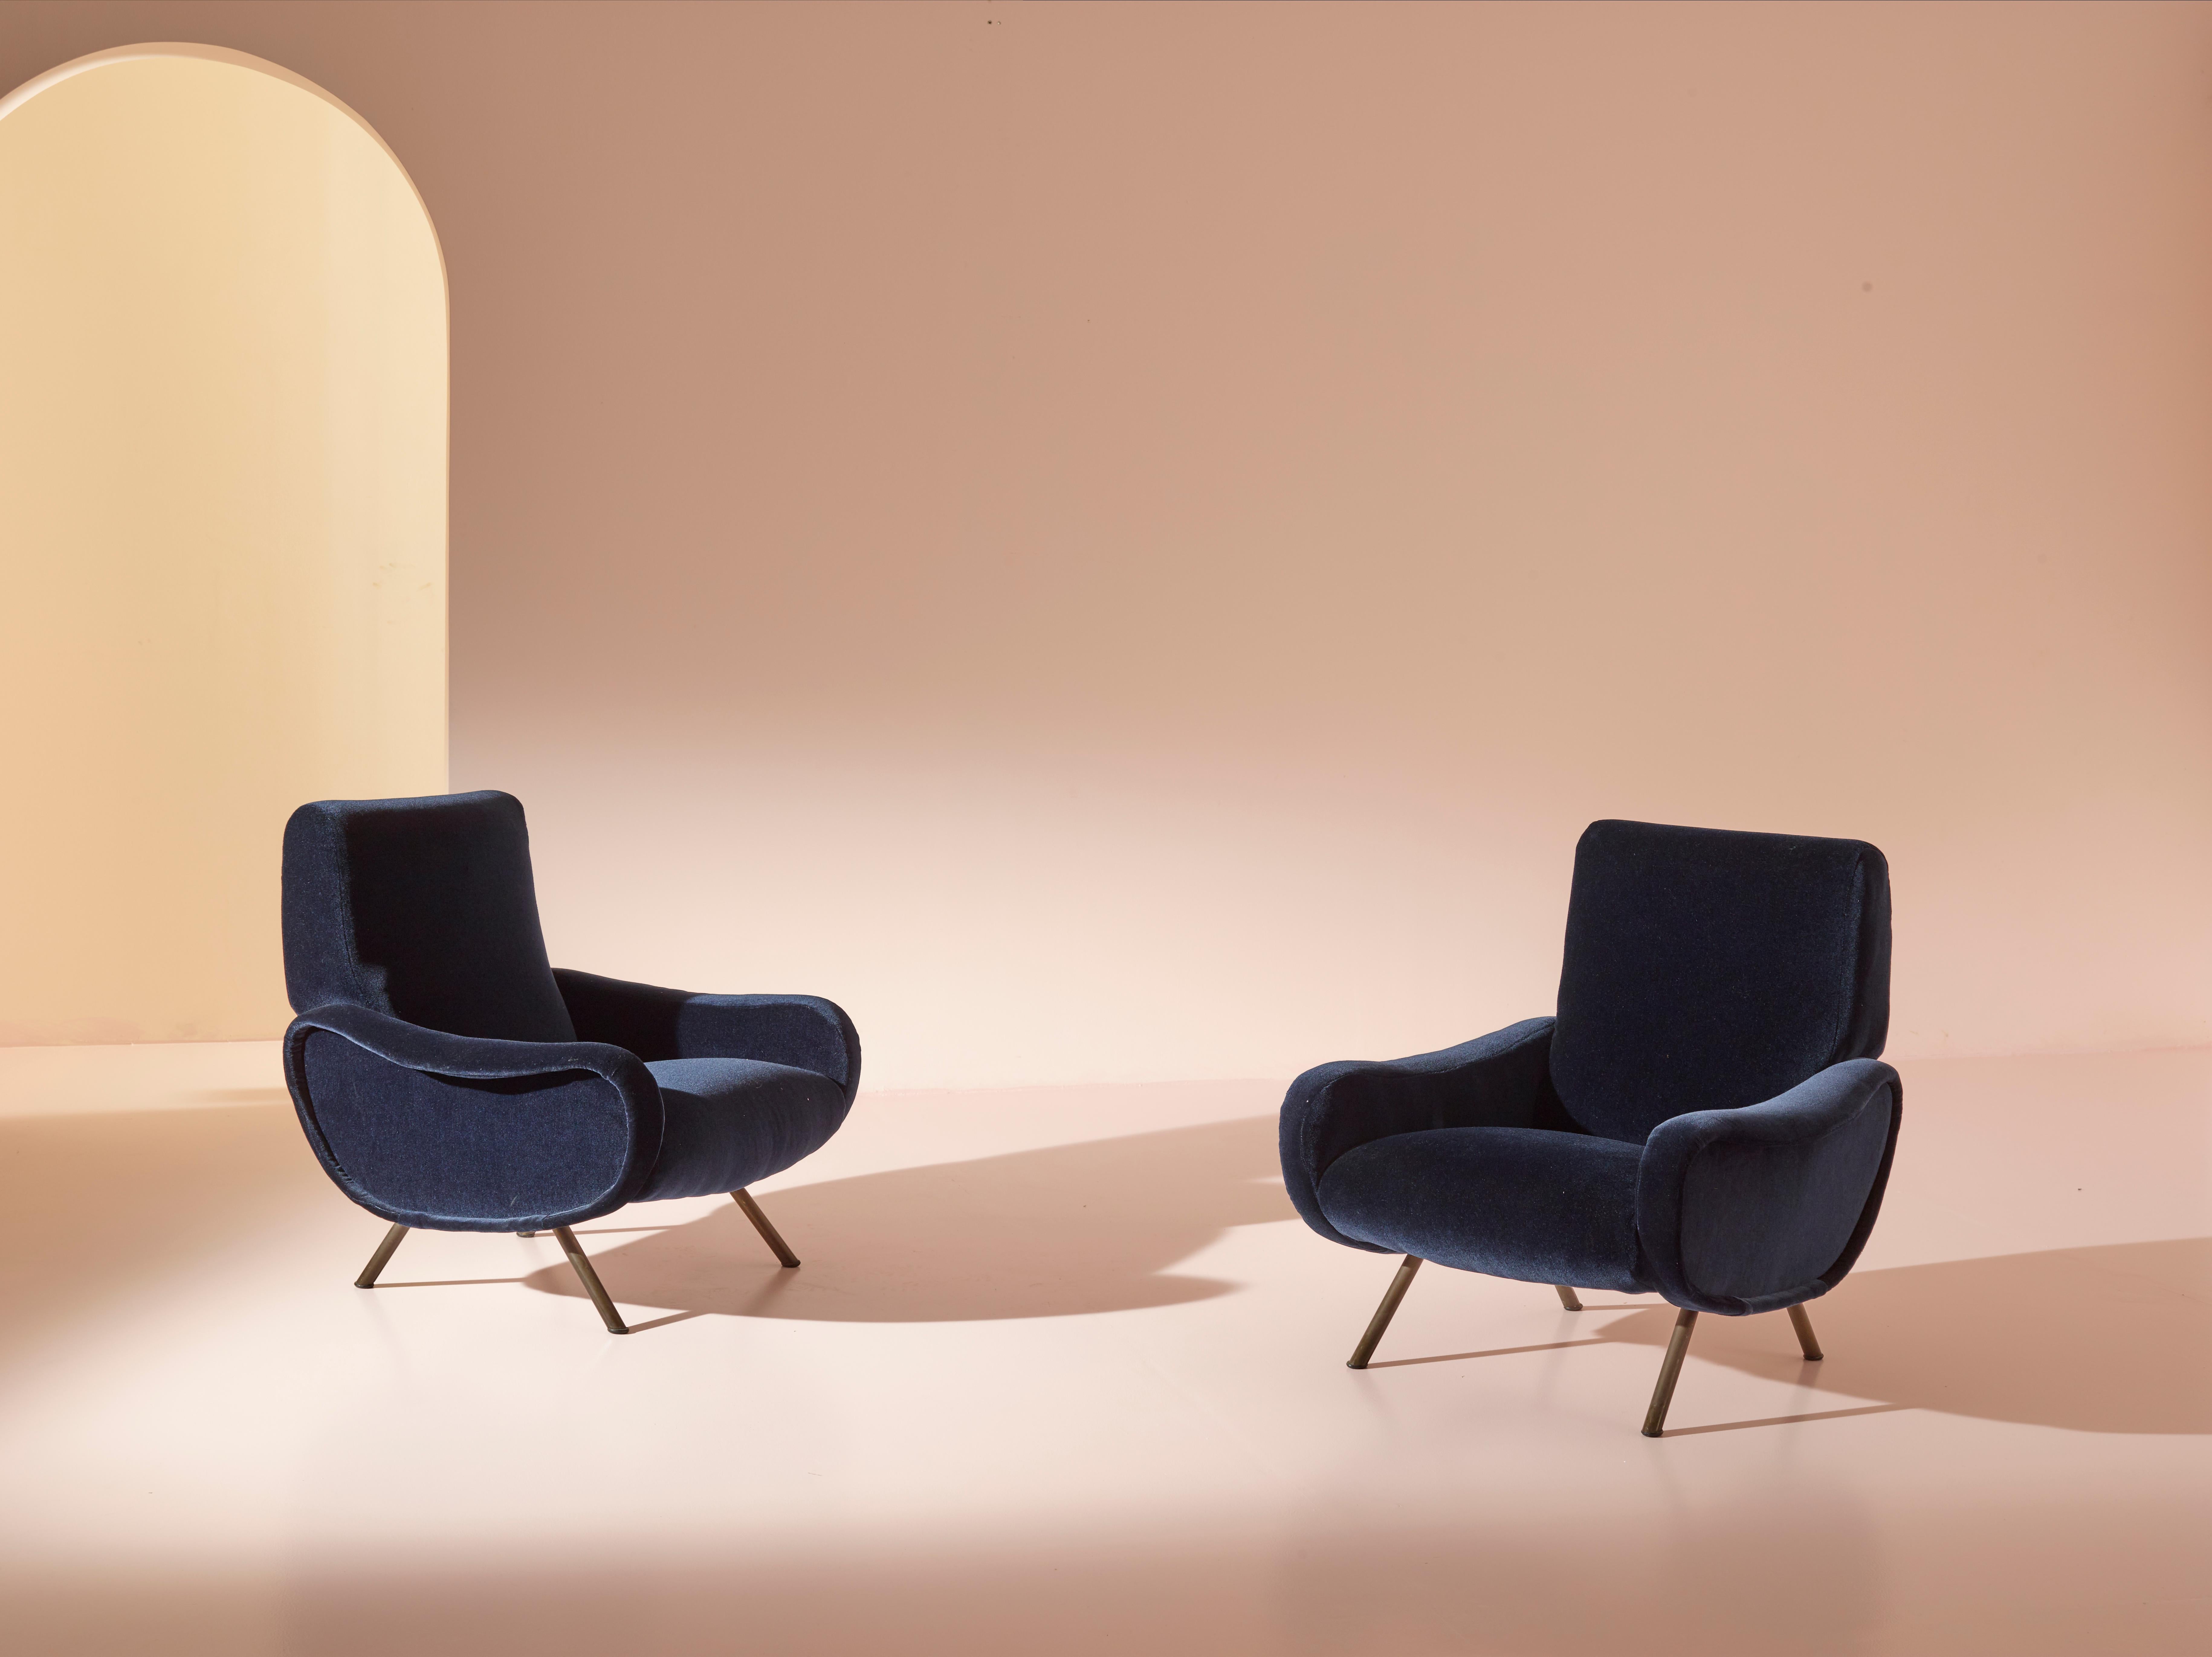 Ein exquisites Paar Lady Lounge Chairs, ursprünglich entworfen von dem berühmten Marco Zanuso für Arflex, Italien im Jahr 1951. Diese bemerkenswerten Stühle wurden sorgfältig neu gepolstert und präsentieren sich nun in einem eleganten dunkelblauen